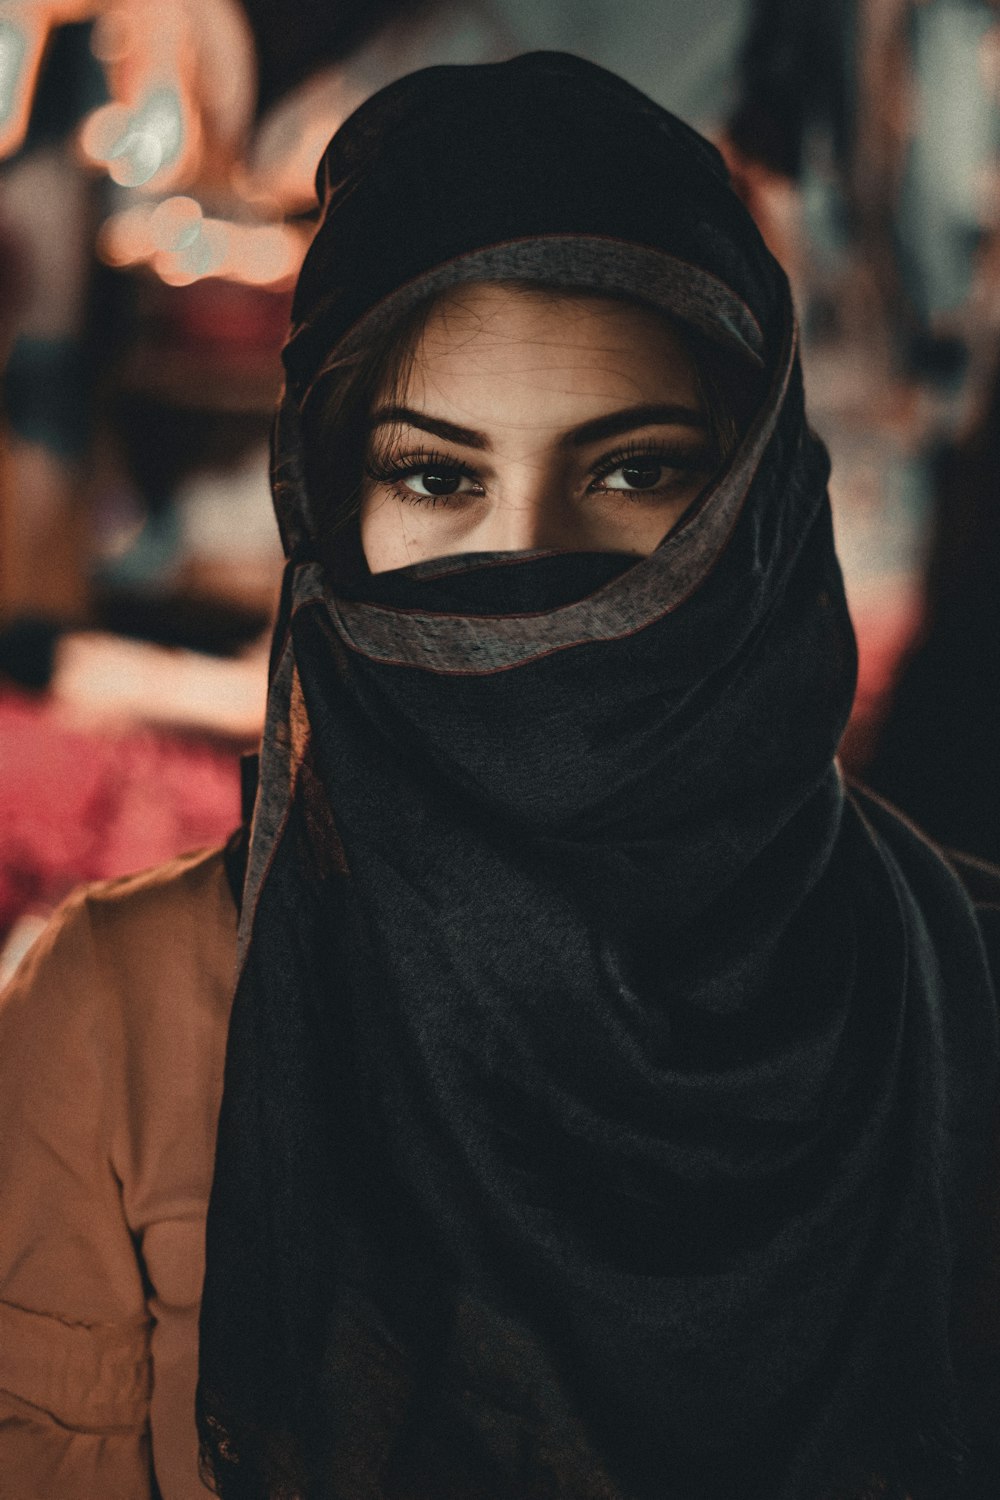 Frau im schwarzen Hijab stehend